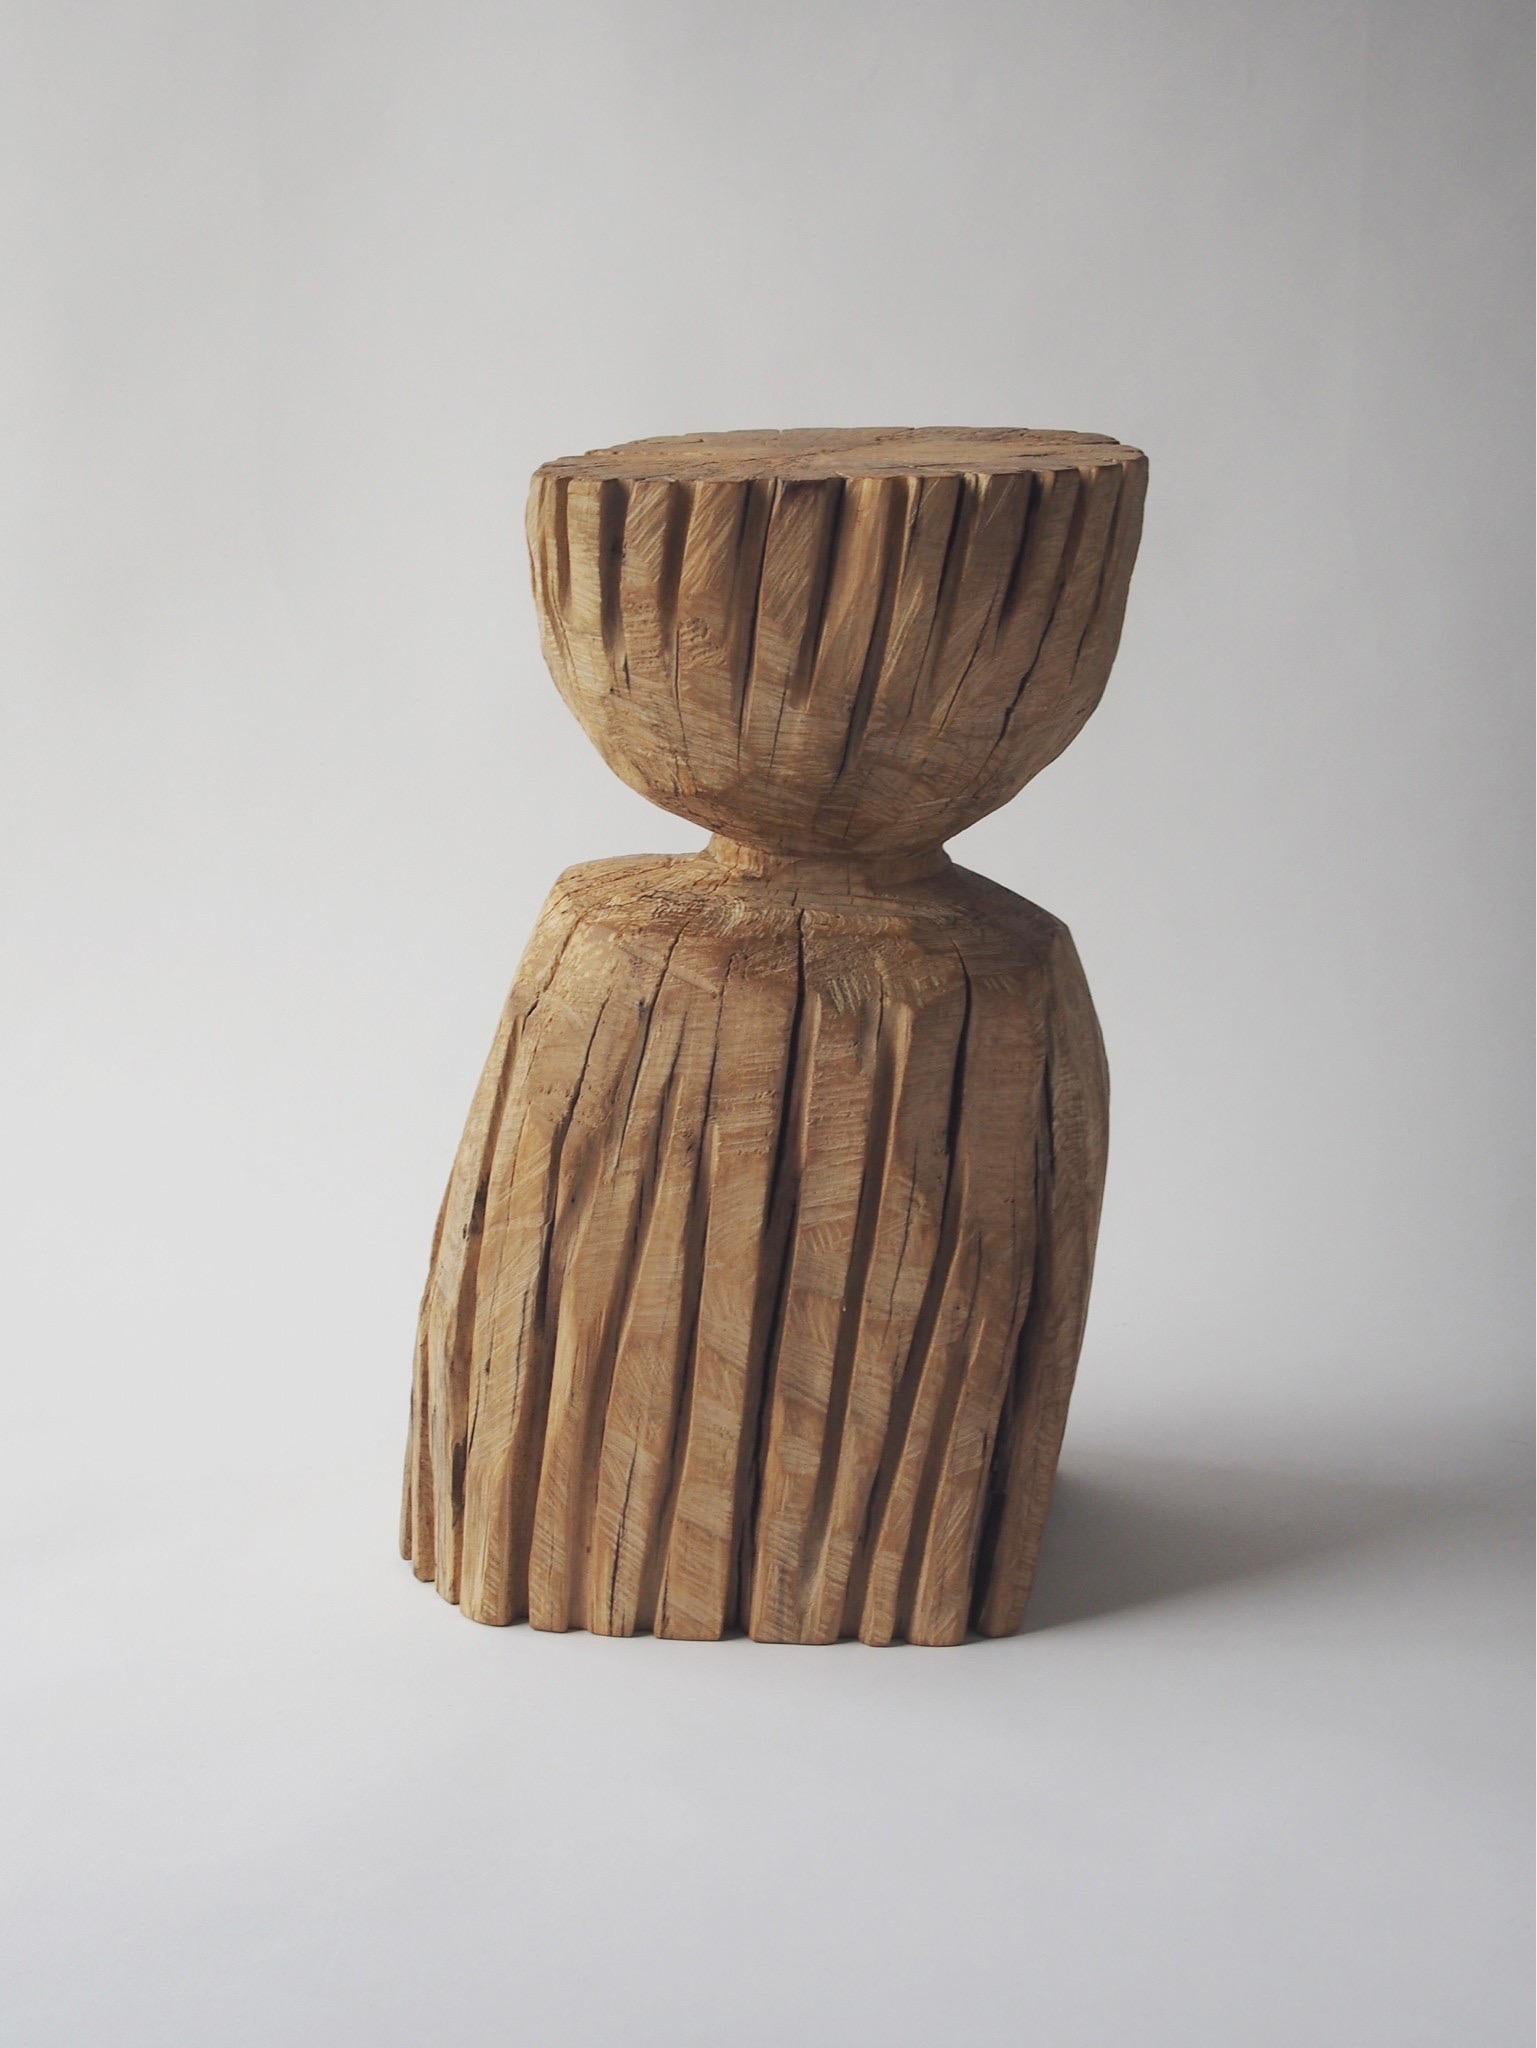 Nom : Garçon
Tabouret sculptural de Zougei, meubles sculptés
MATERIAL : Zelkova
Cette œuvre est sculptée dans du bois à l'aide de plusieurs types de tronçonneuses.
La plupart des bois utilisés pour les œuvres de Nishimura ne peuvent servir à rien,